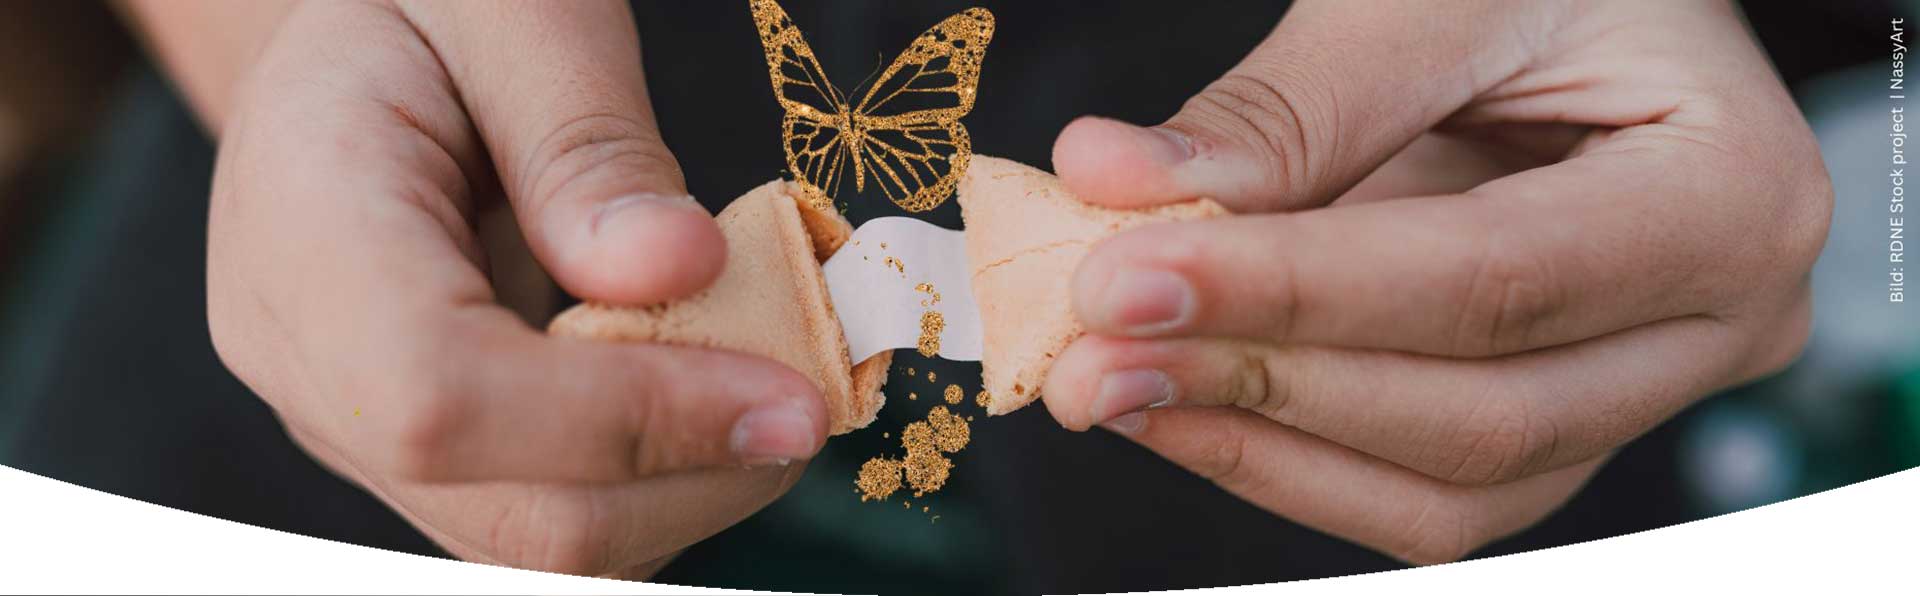 Ein Glückskeks wird geöffnet und heraus kommt ein golden glitzernder Schmetterling zum Thema Glückskekse und Achtsamkeit